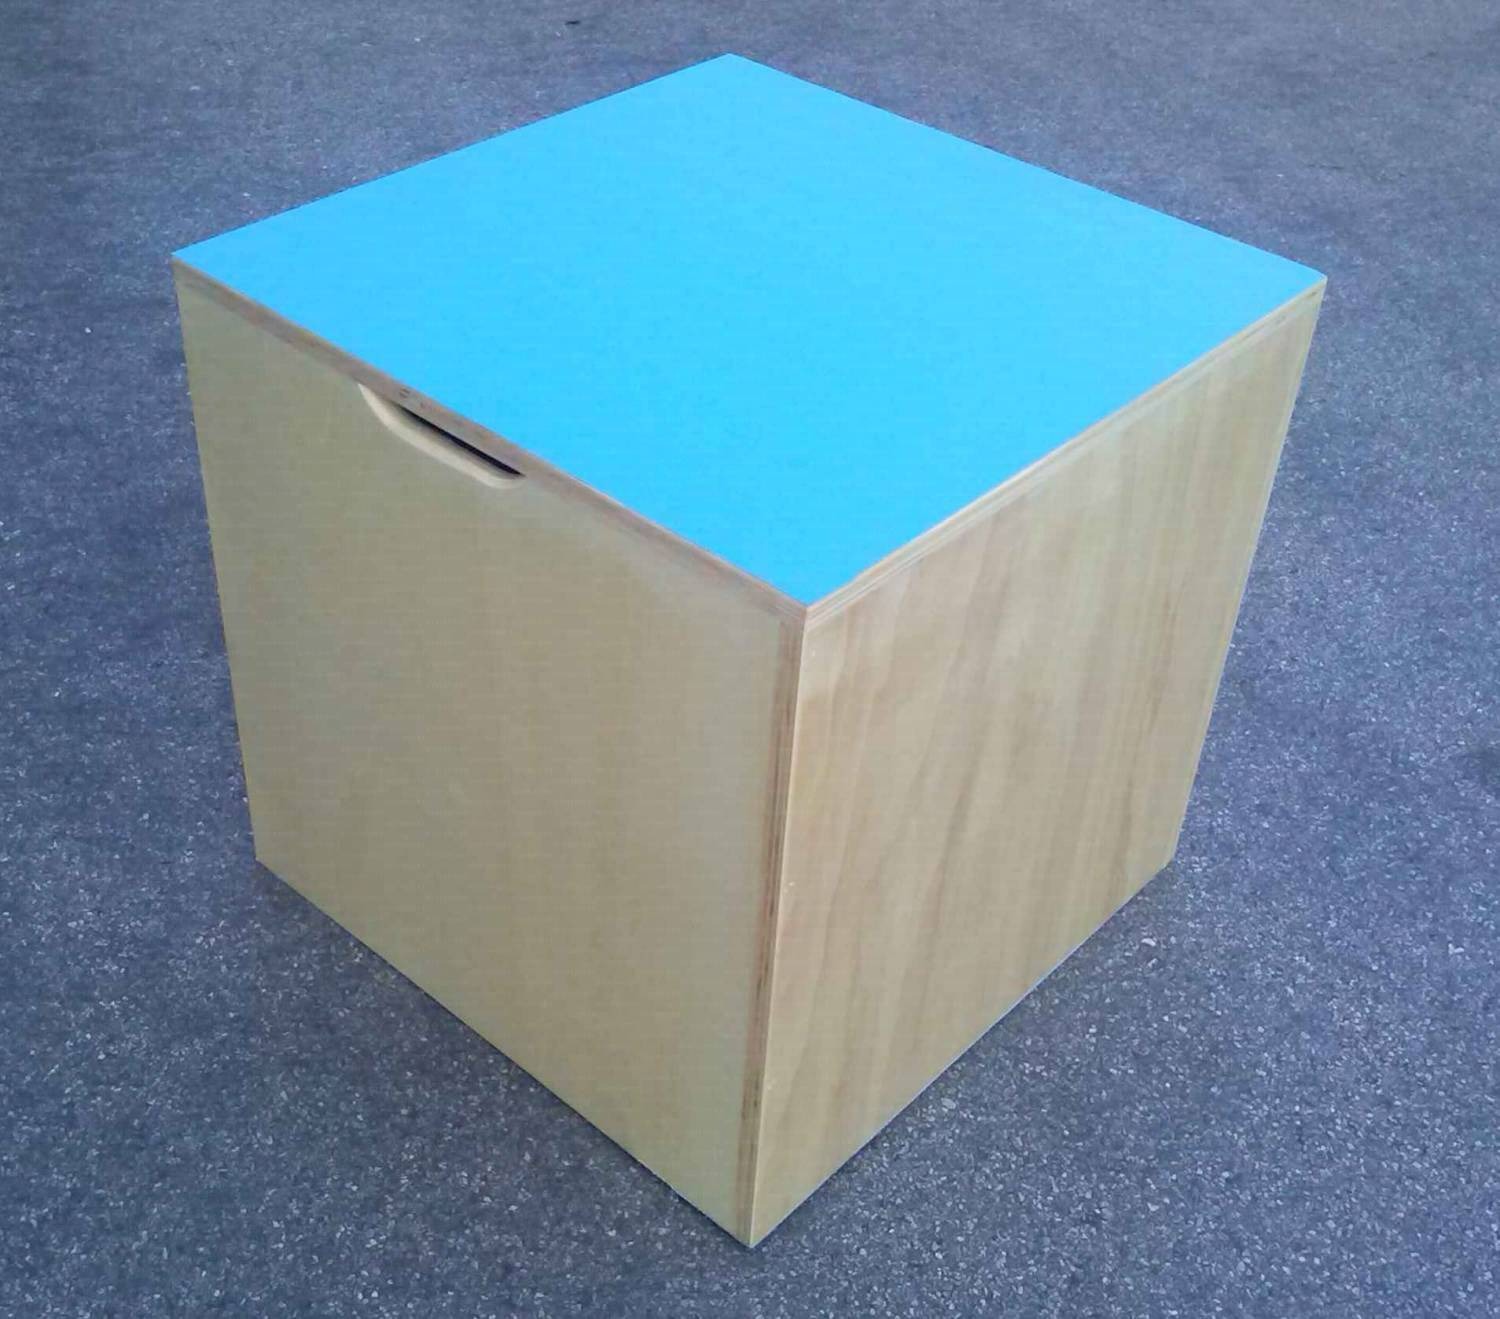 Cubo propriocettivo misura 50x50x50 cm., in legno con fondo e piano superiore dotato di antiscivolo, con impugnature per il trasporto.